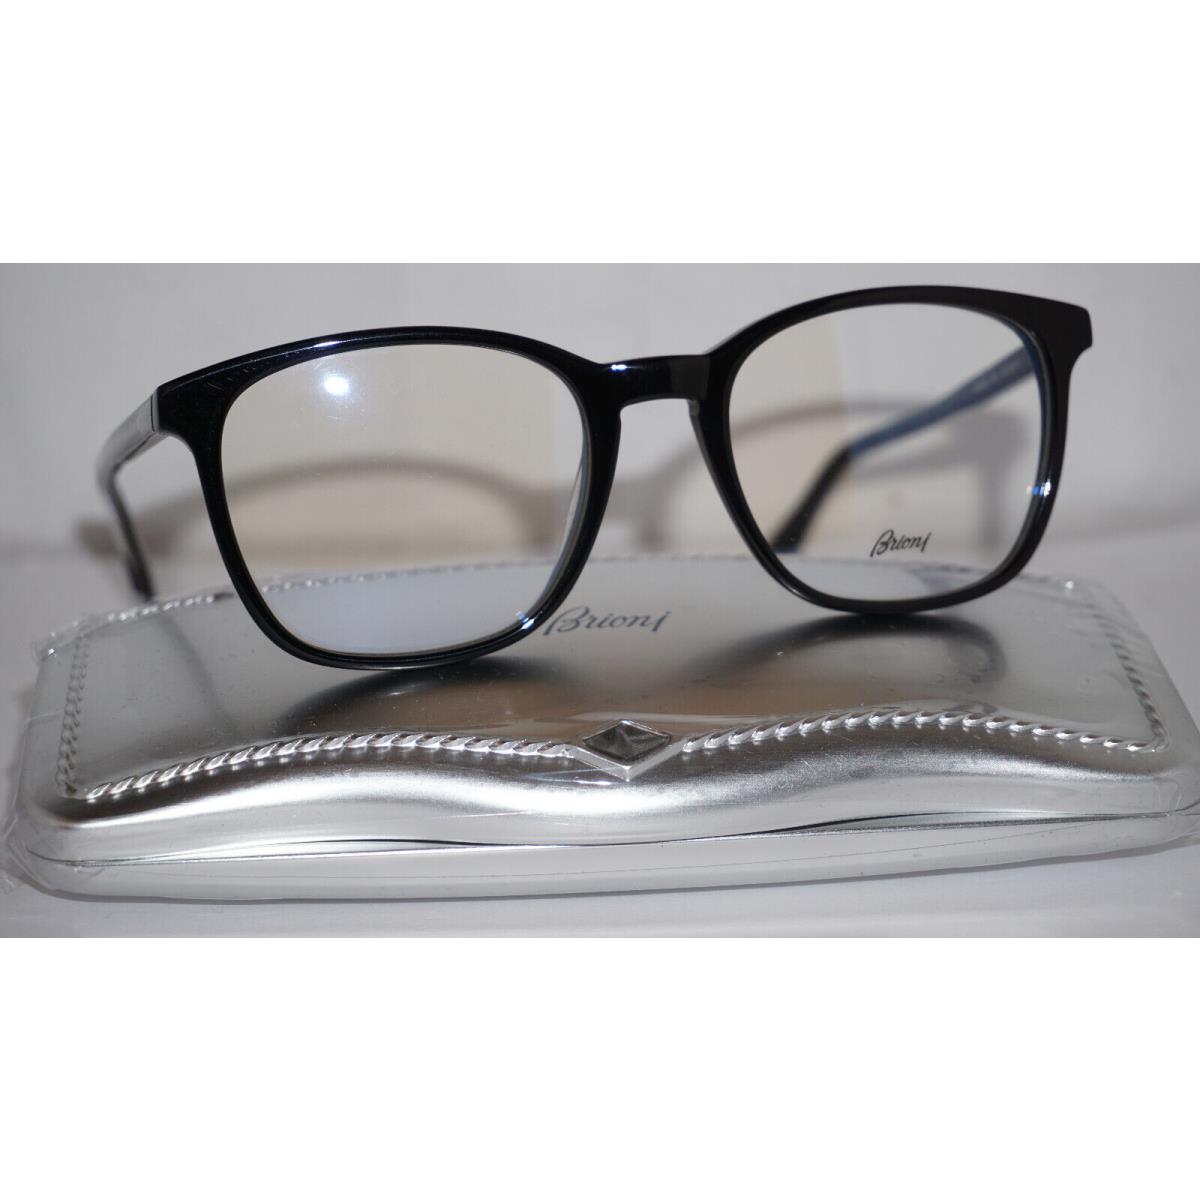 Brioni Eyeglasses RX Black BR0033O 001 52 20 145